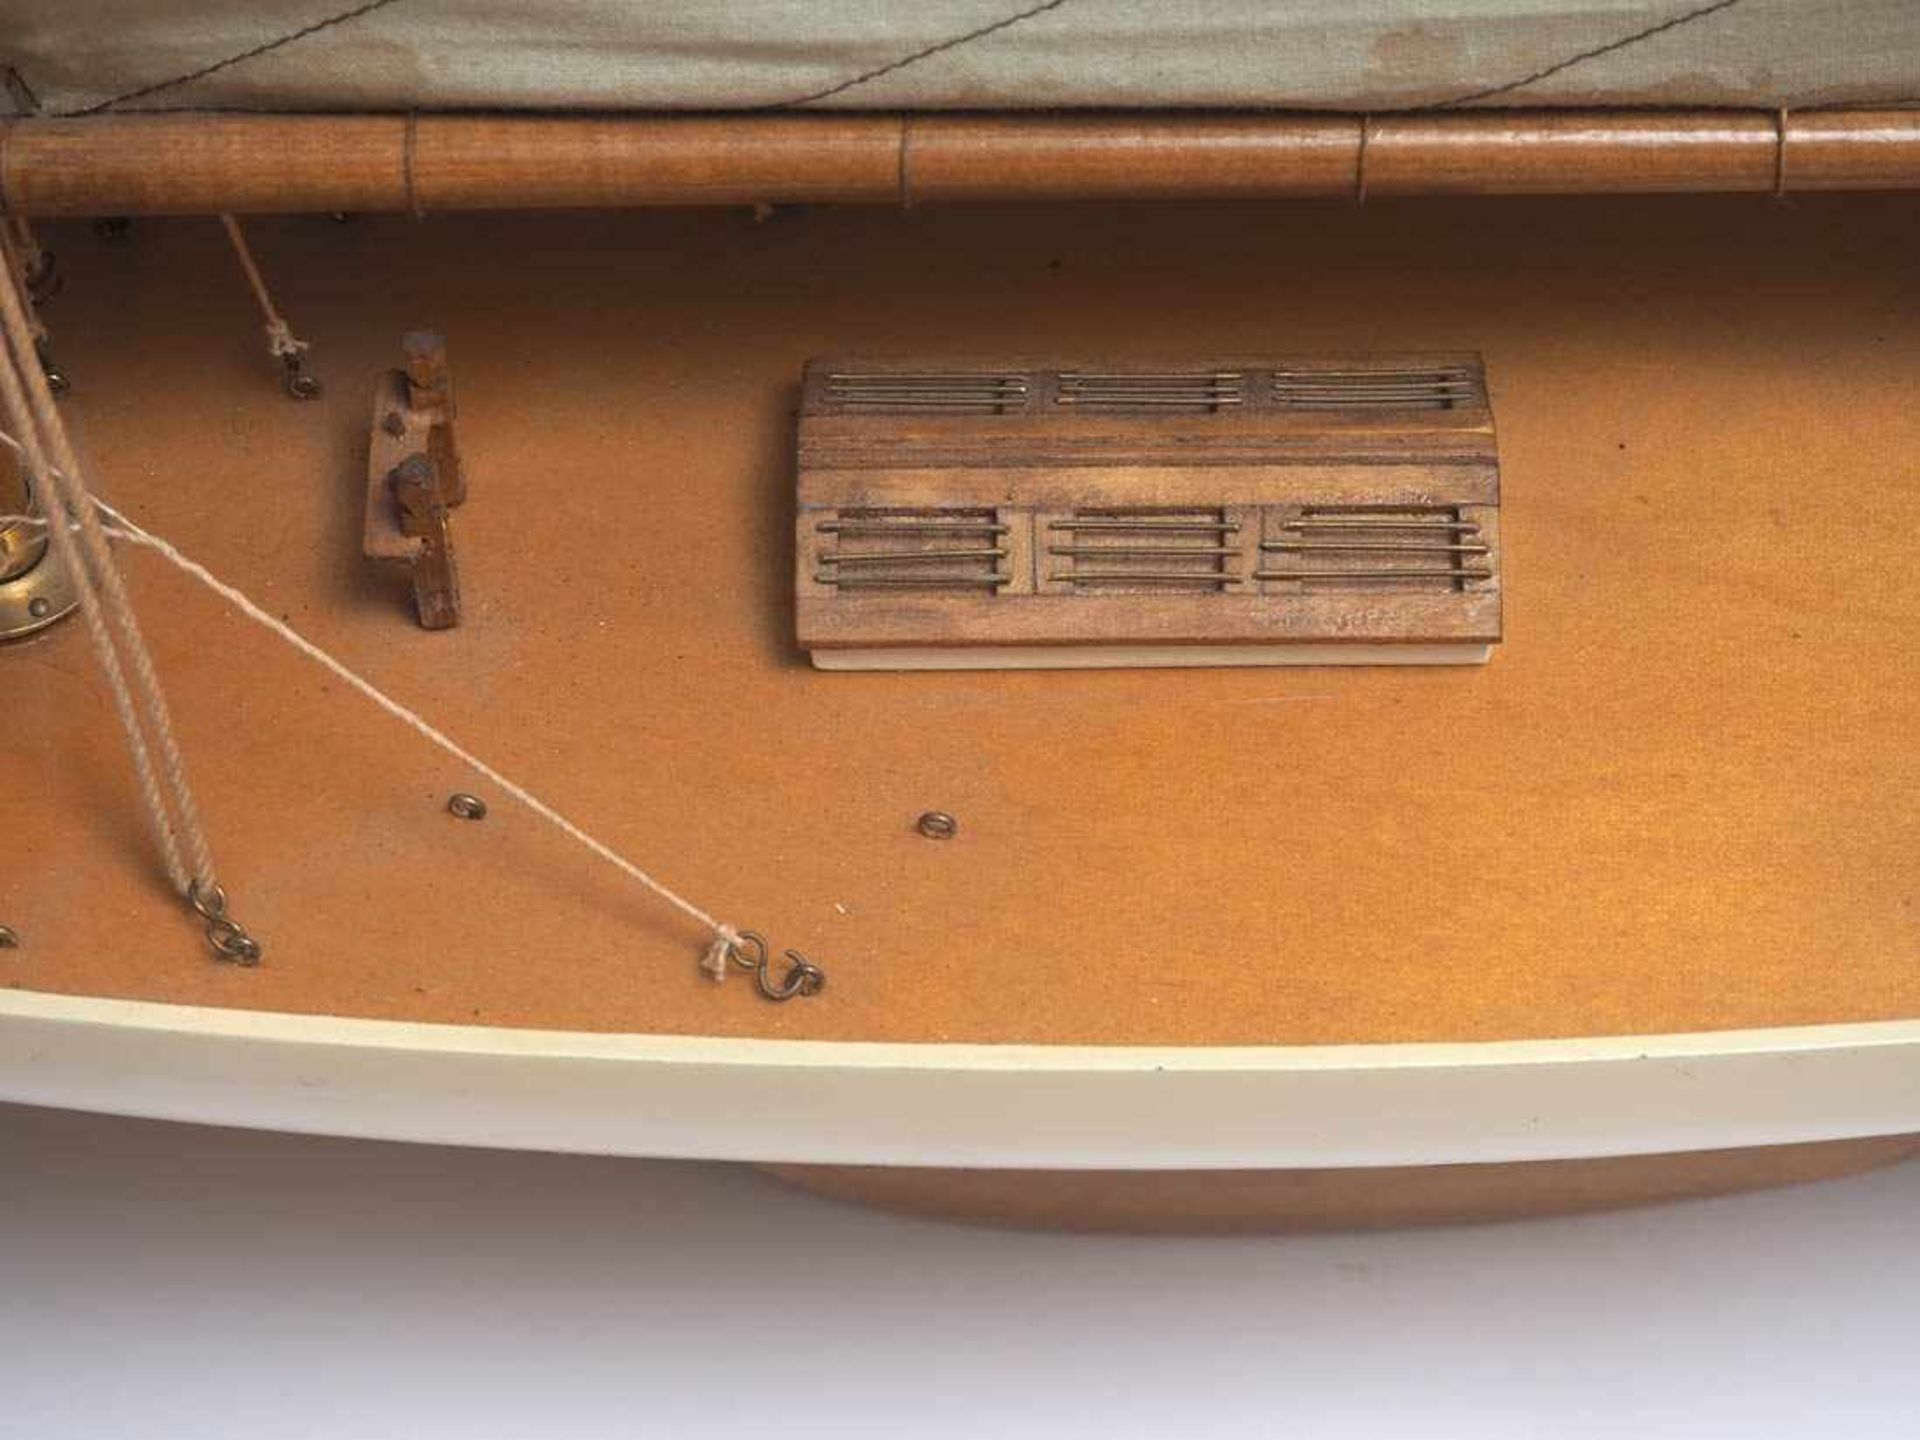 SchiffsmodellModell einer einmastigen Kielyacht. Holz und Leinen. L.112, H.115cm. - Bild 4 aus 4